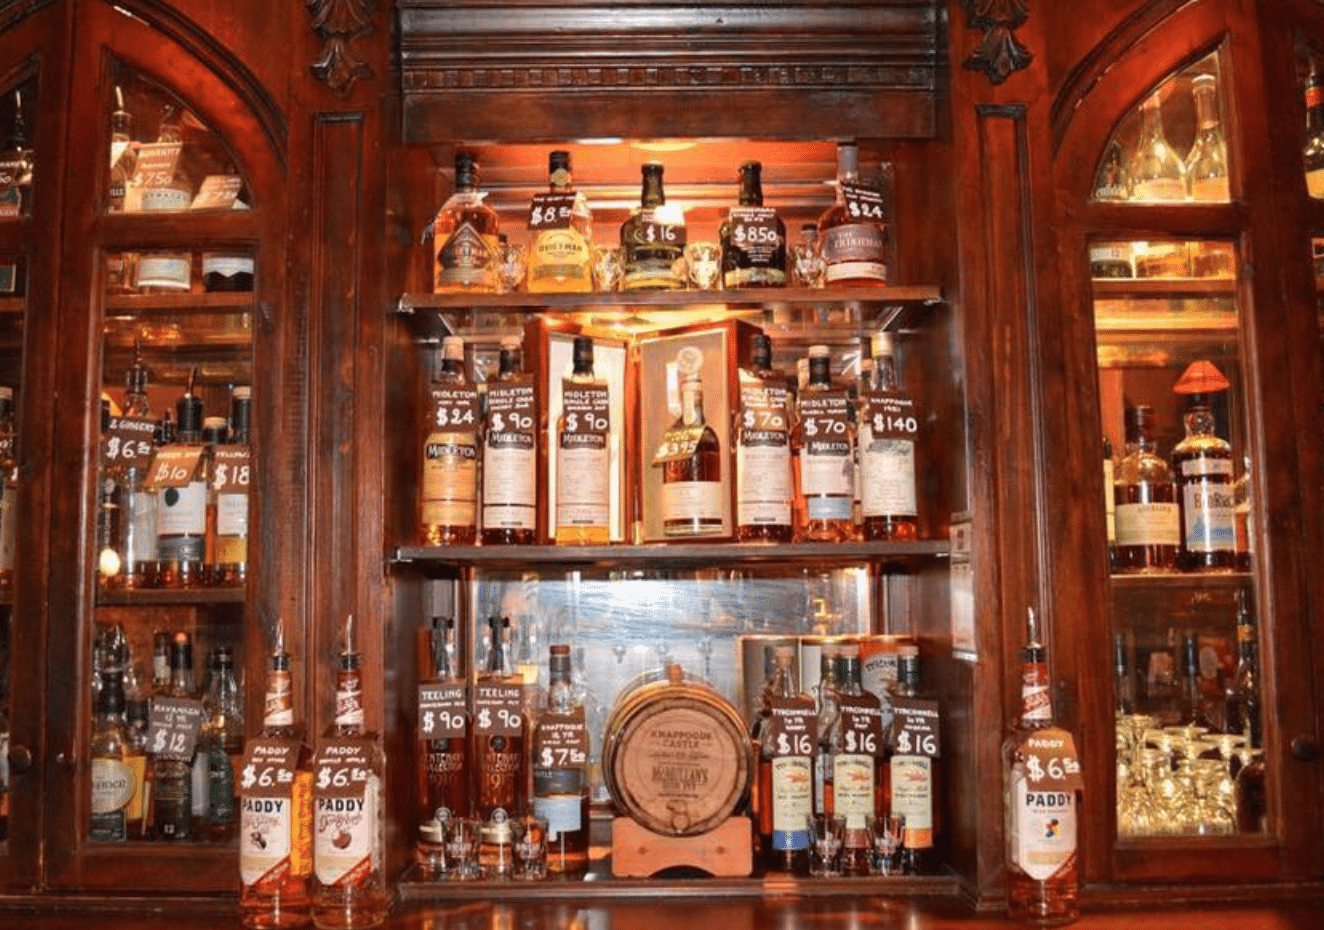 McMullan's Irish Pub in America